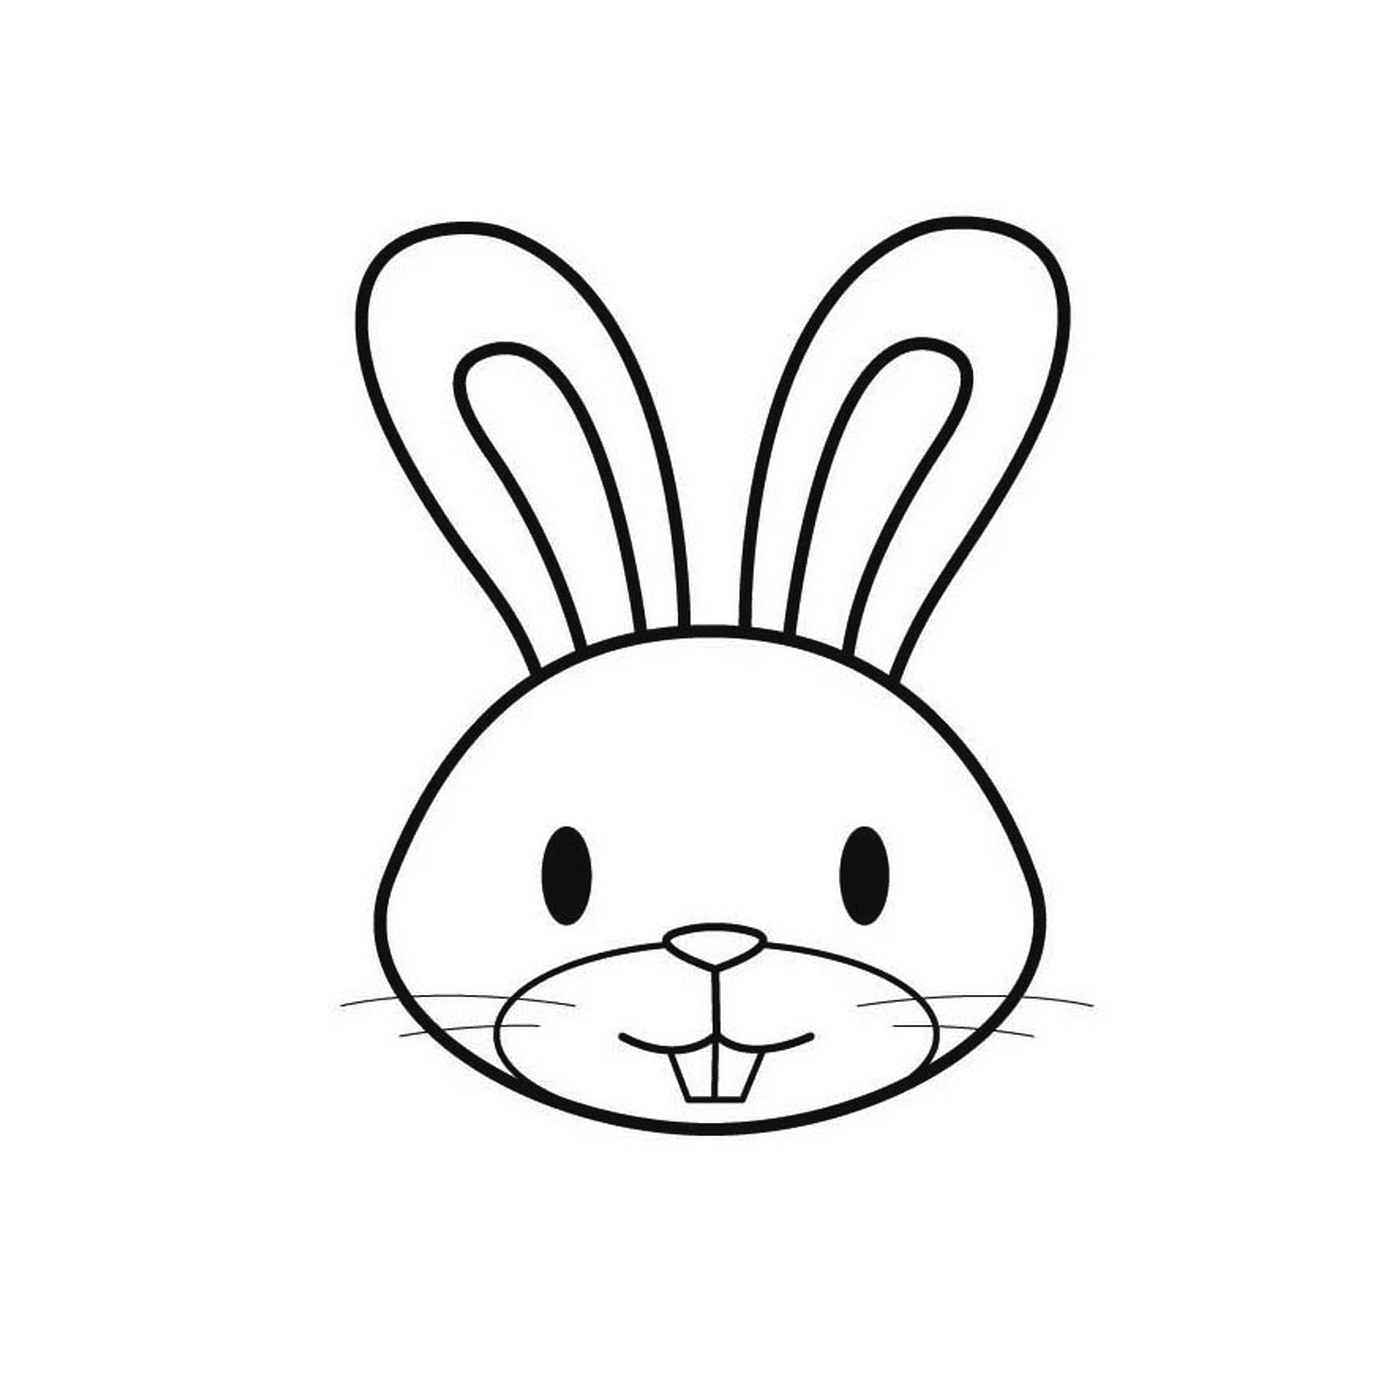  O rosto de um coelho 